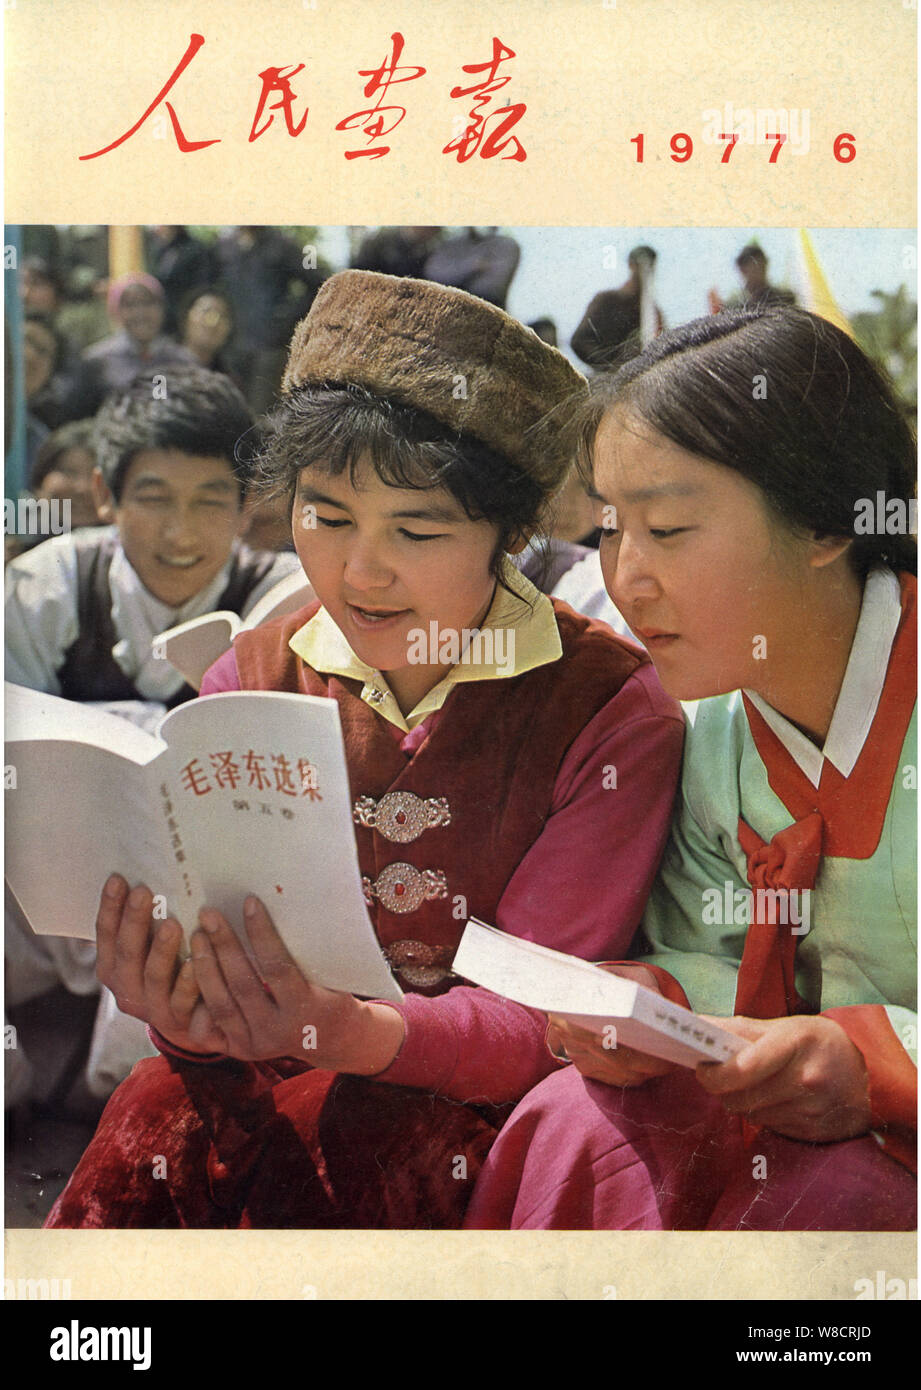 Cette couverture de la Chine Pictorial publié en juin 1977 dispose d'étudiants chinois de l'Université Minzu de Chine lecture des Œuvres choisies de Mao Zedong (Mao Banque D'Images